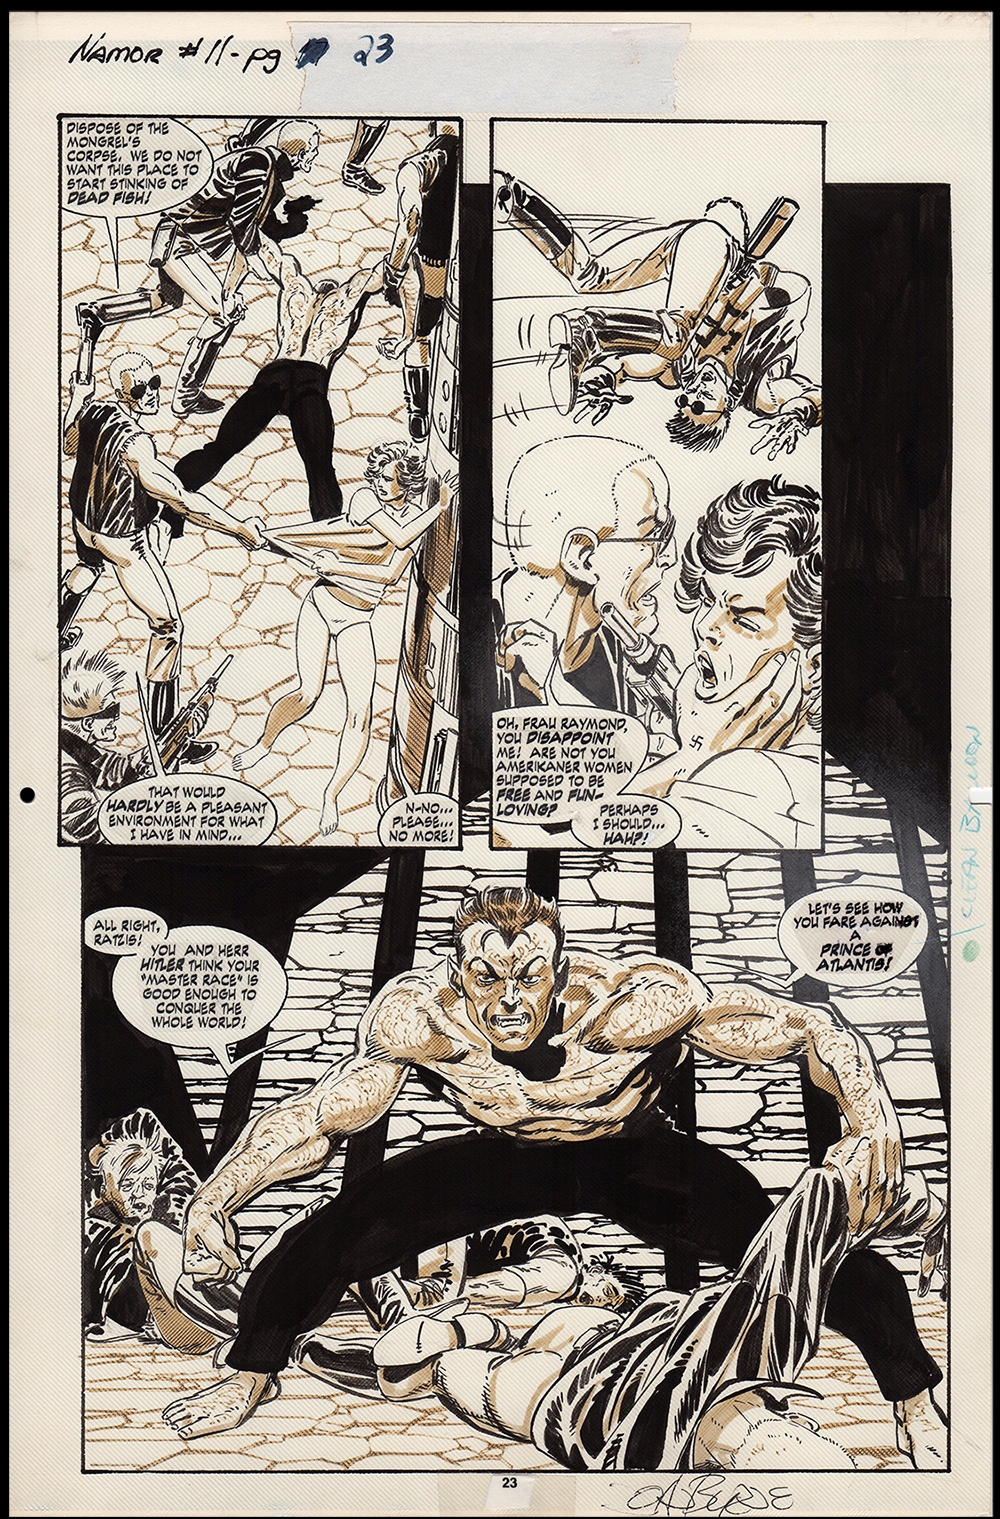 USA, 1991 John Byrne Namor the Sub-Mariner # 11 